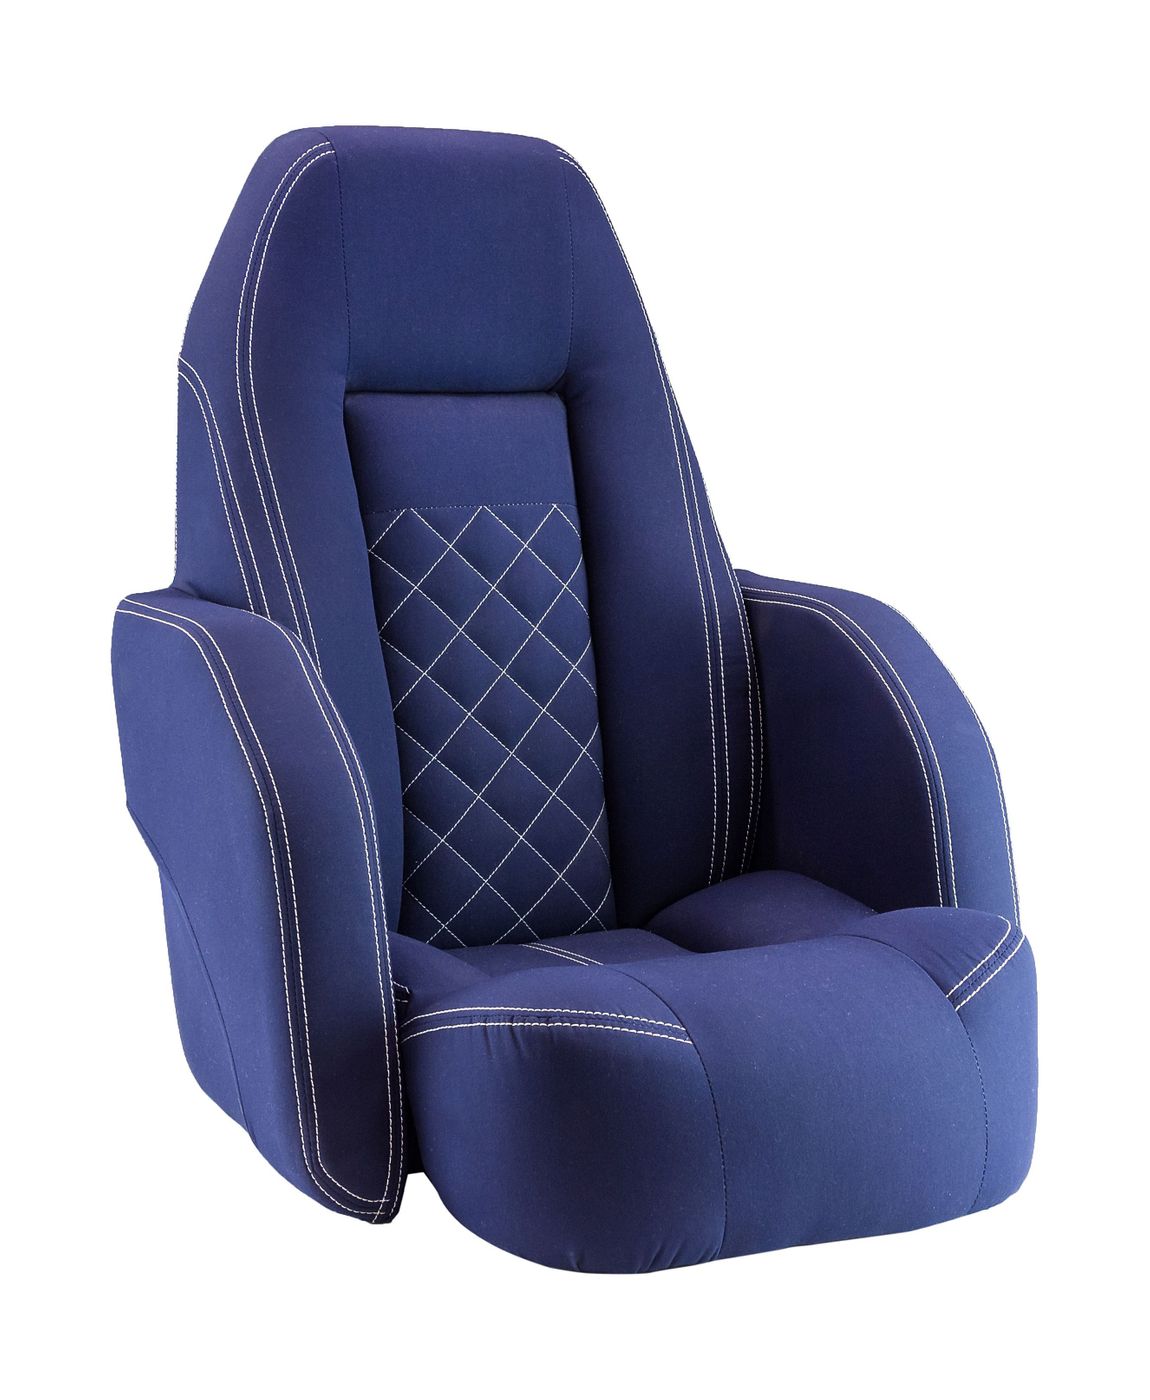 Кресло ROYALITA мягкое, подставка, обивка ткань Markilux темно-синяя 570000395